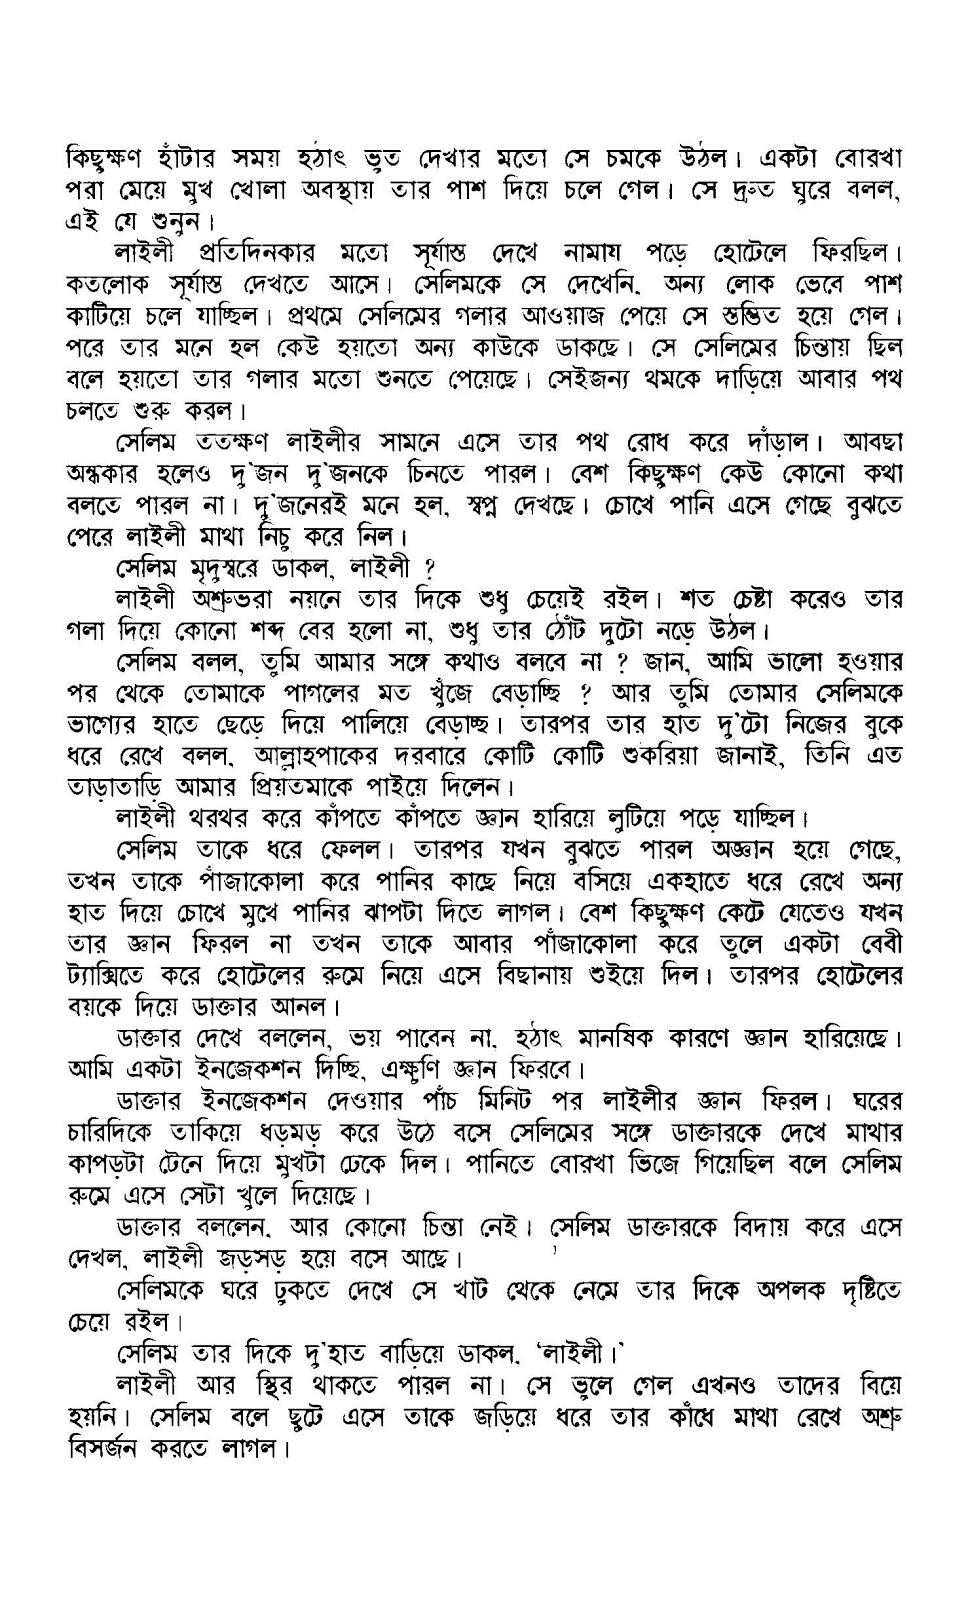 bangla medicine book pdf